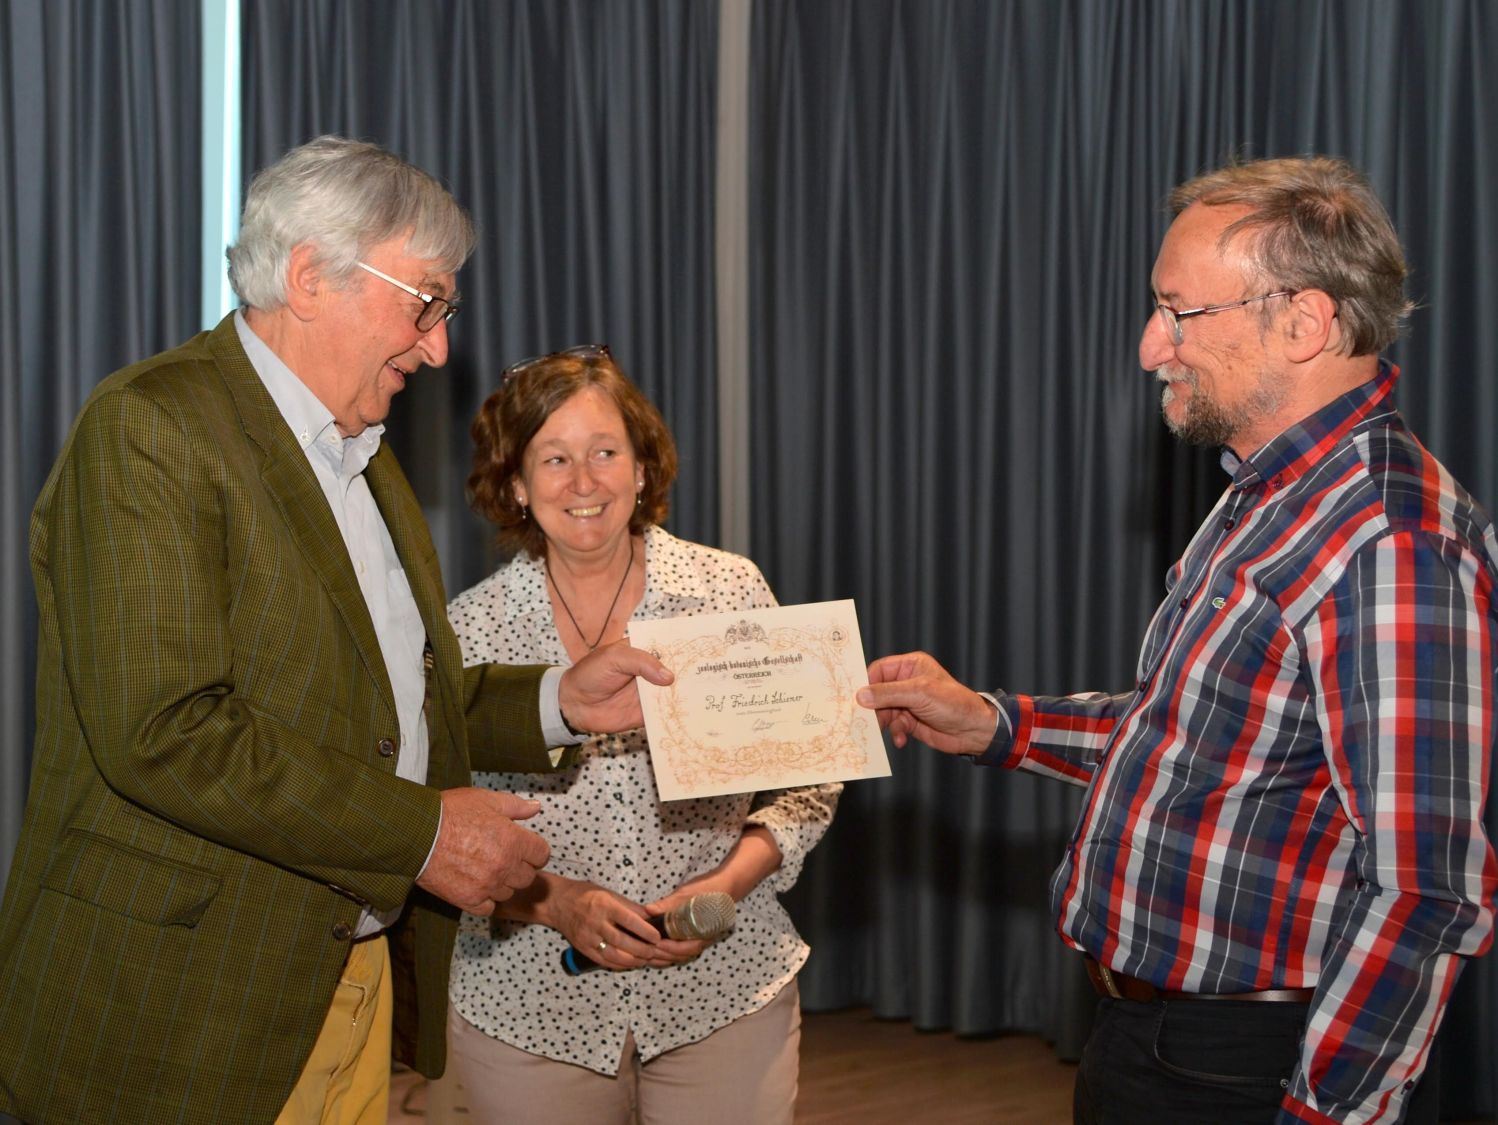 Im Rahmen der Veranstaltung wurde Univ. Prof. Fritz Schiemer die Urkunde zur Ehrenmitgliedschaft in der Zoologisch-Botanischen Gesellschaft übergeben (v.l.n.r.): F. Schiemer, Elisabeth Haring, G. Aubrecht